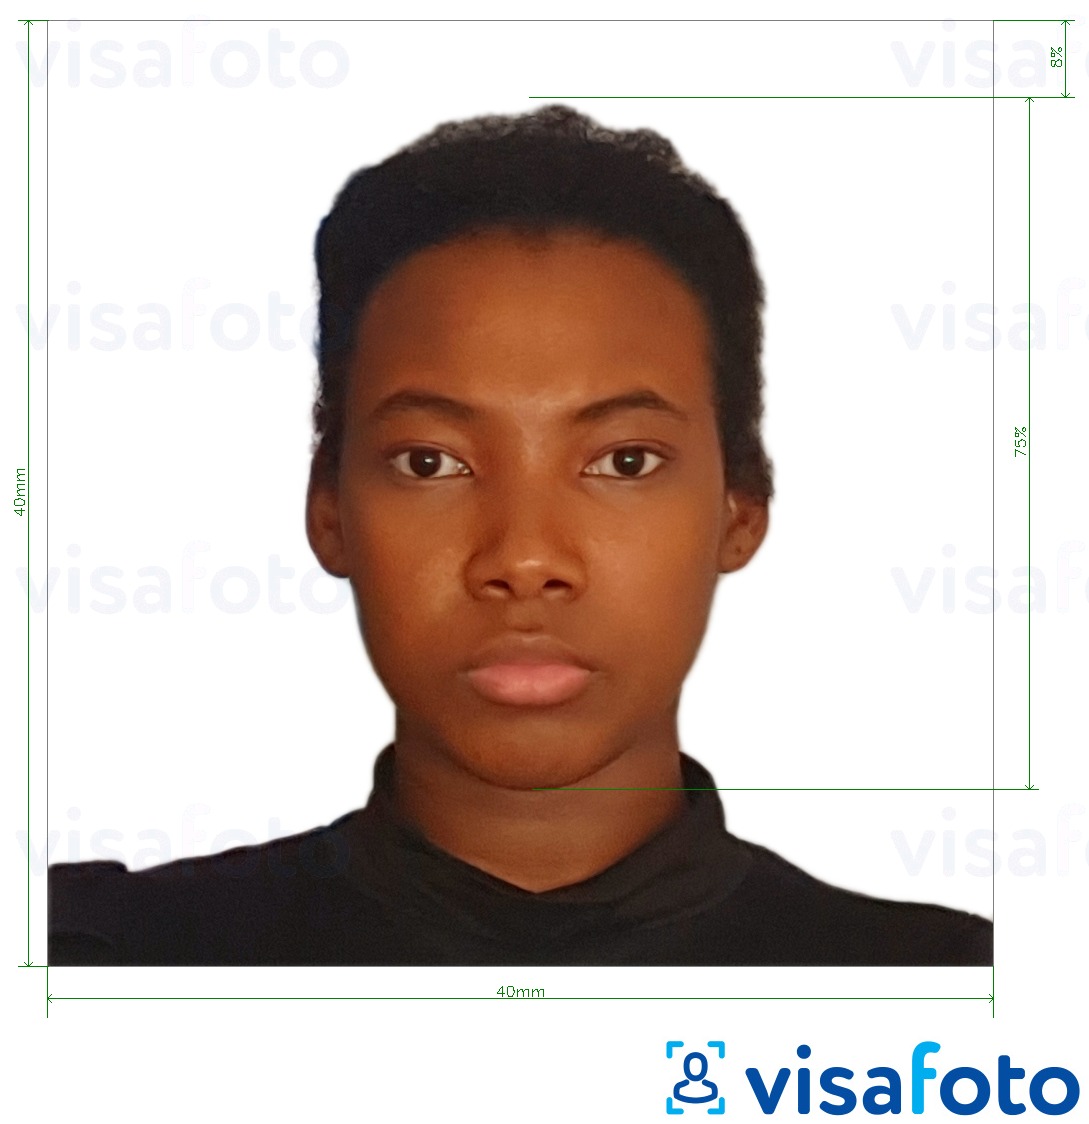 Пример за снимка за Камерунска виза 4х4 см (40x40 мм) с точна спецификация за размер